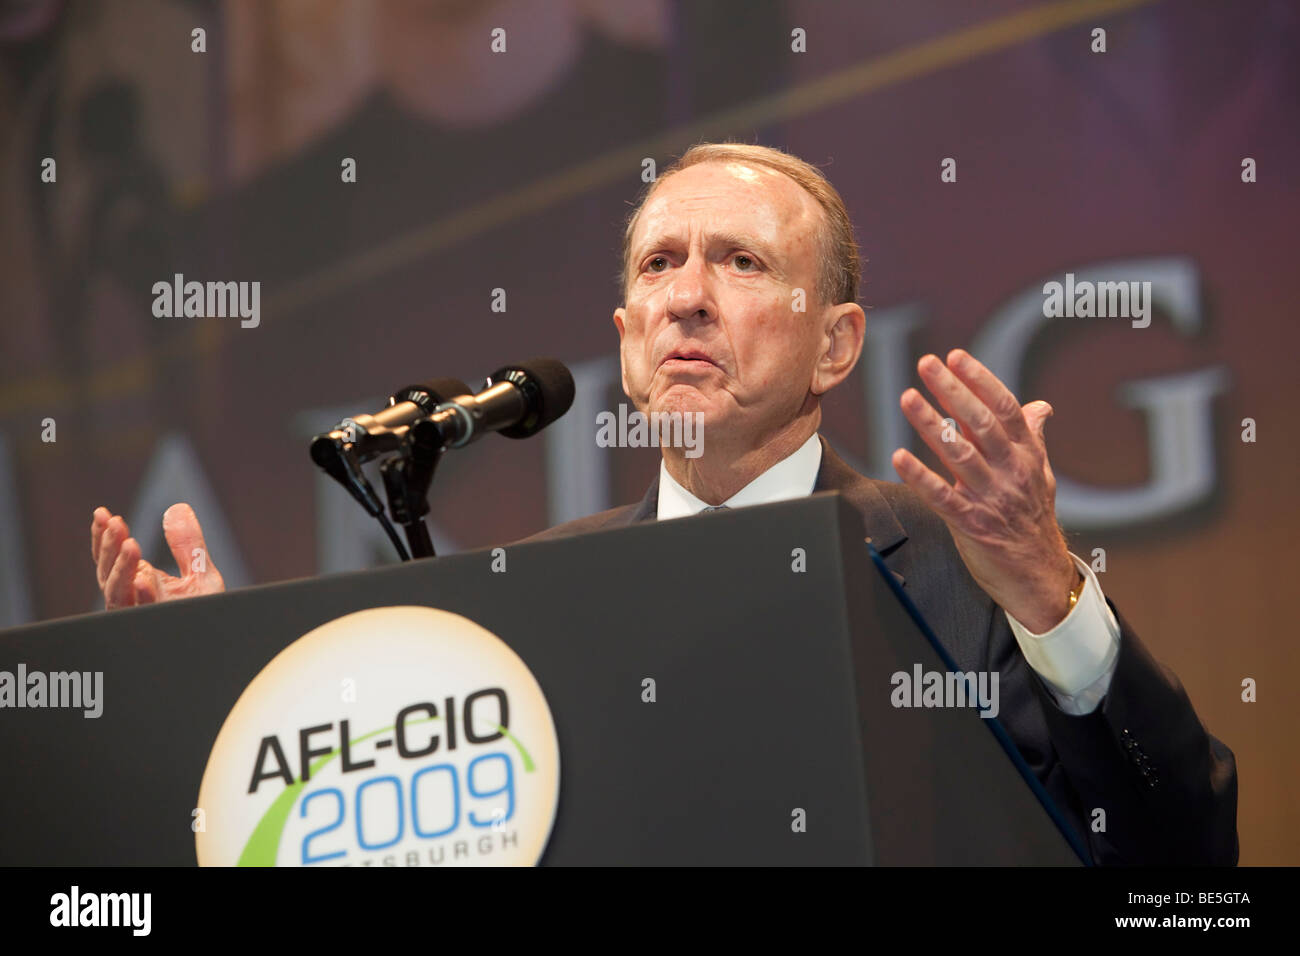 Pittsburgh, Pennsylvania - Il senatore Arlen spettro parla all'AFL-CIO convenzione. Foto Stock